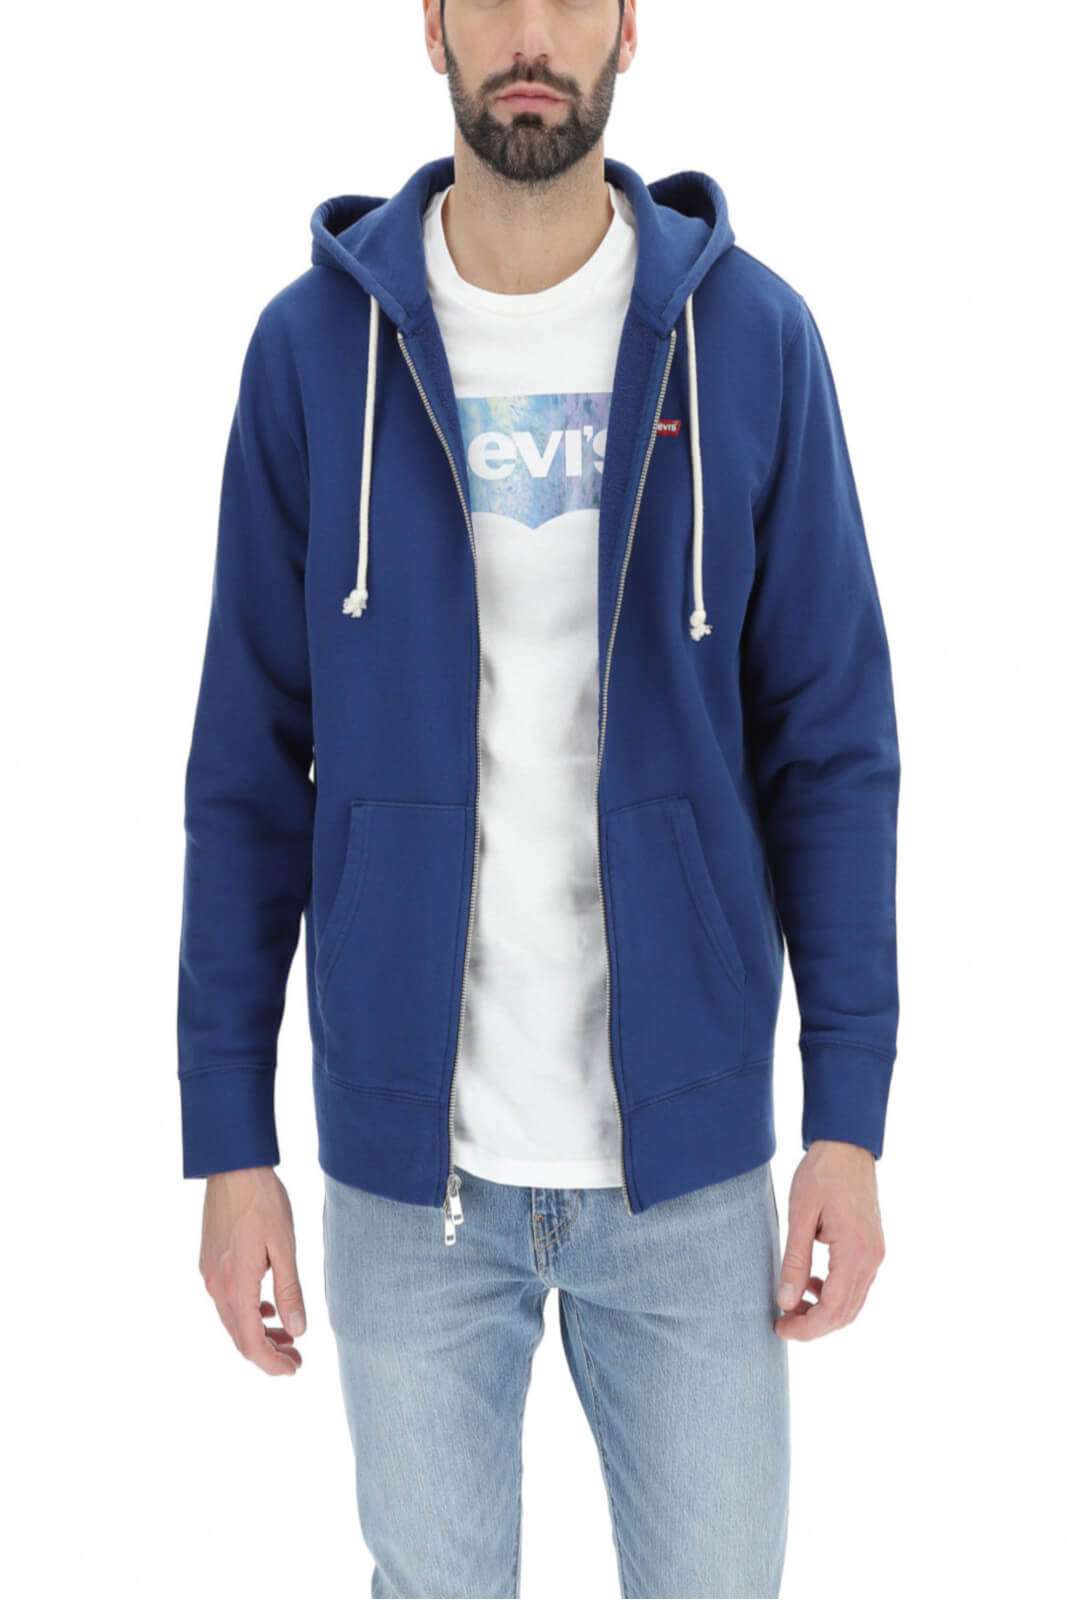 Levi's NEW ORIGINAL ZIP UP men's sweatshirt with hood